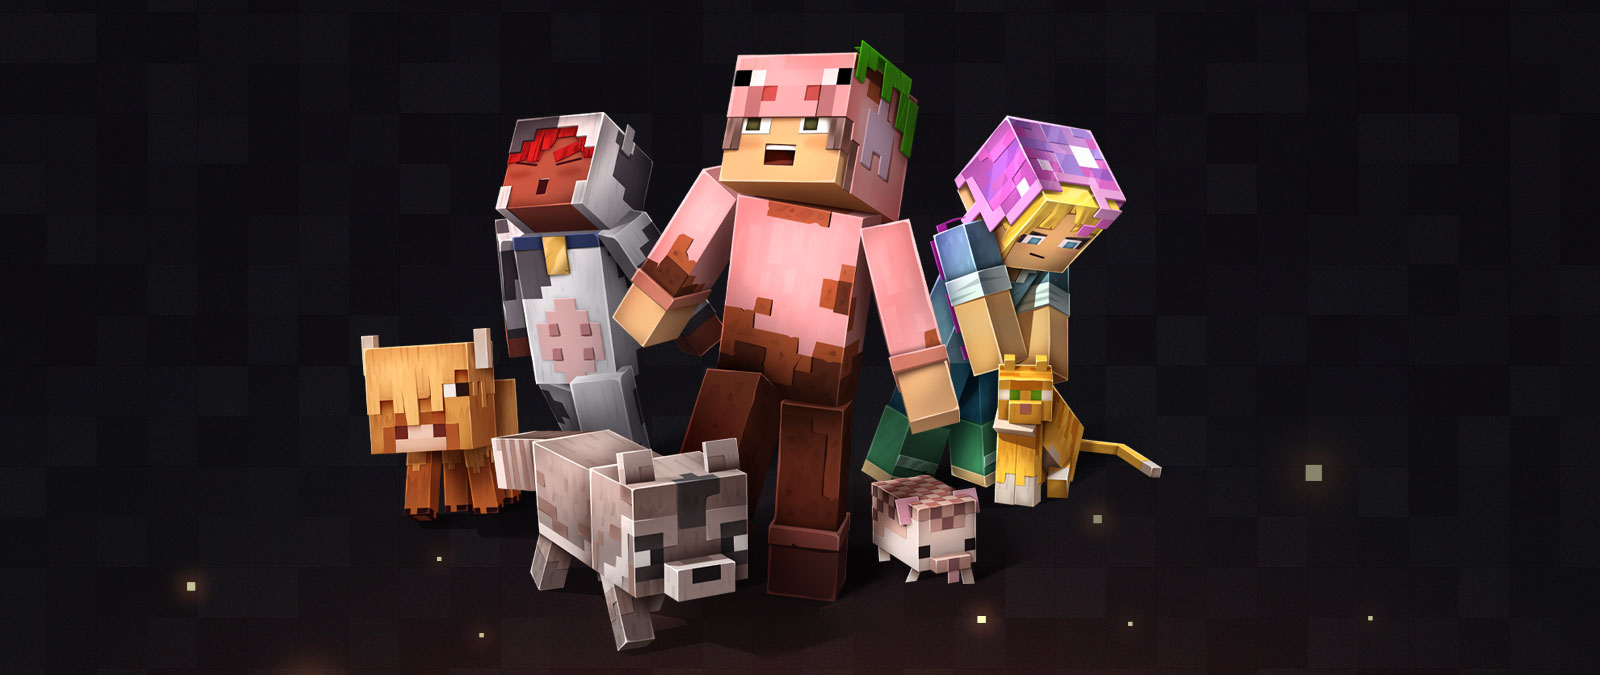 Postavy a zvířata z Minecraftu v různých skinech, přičemž se jedna postava skloní, aby pohladila kočku.